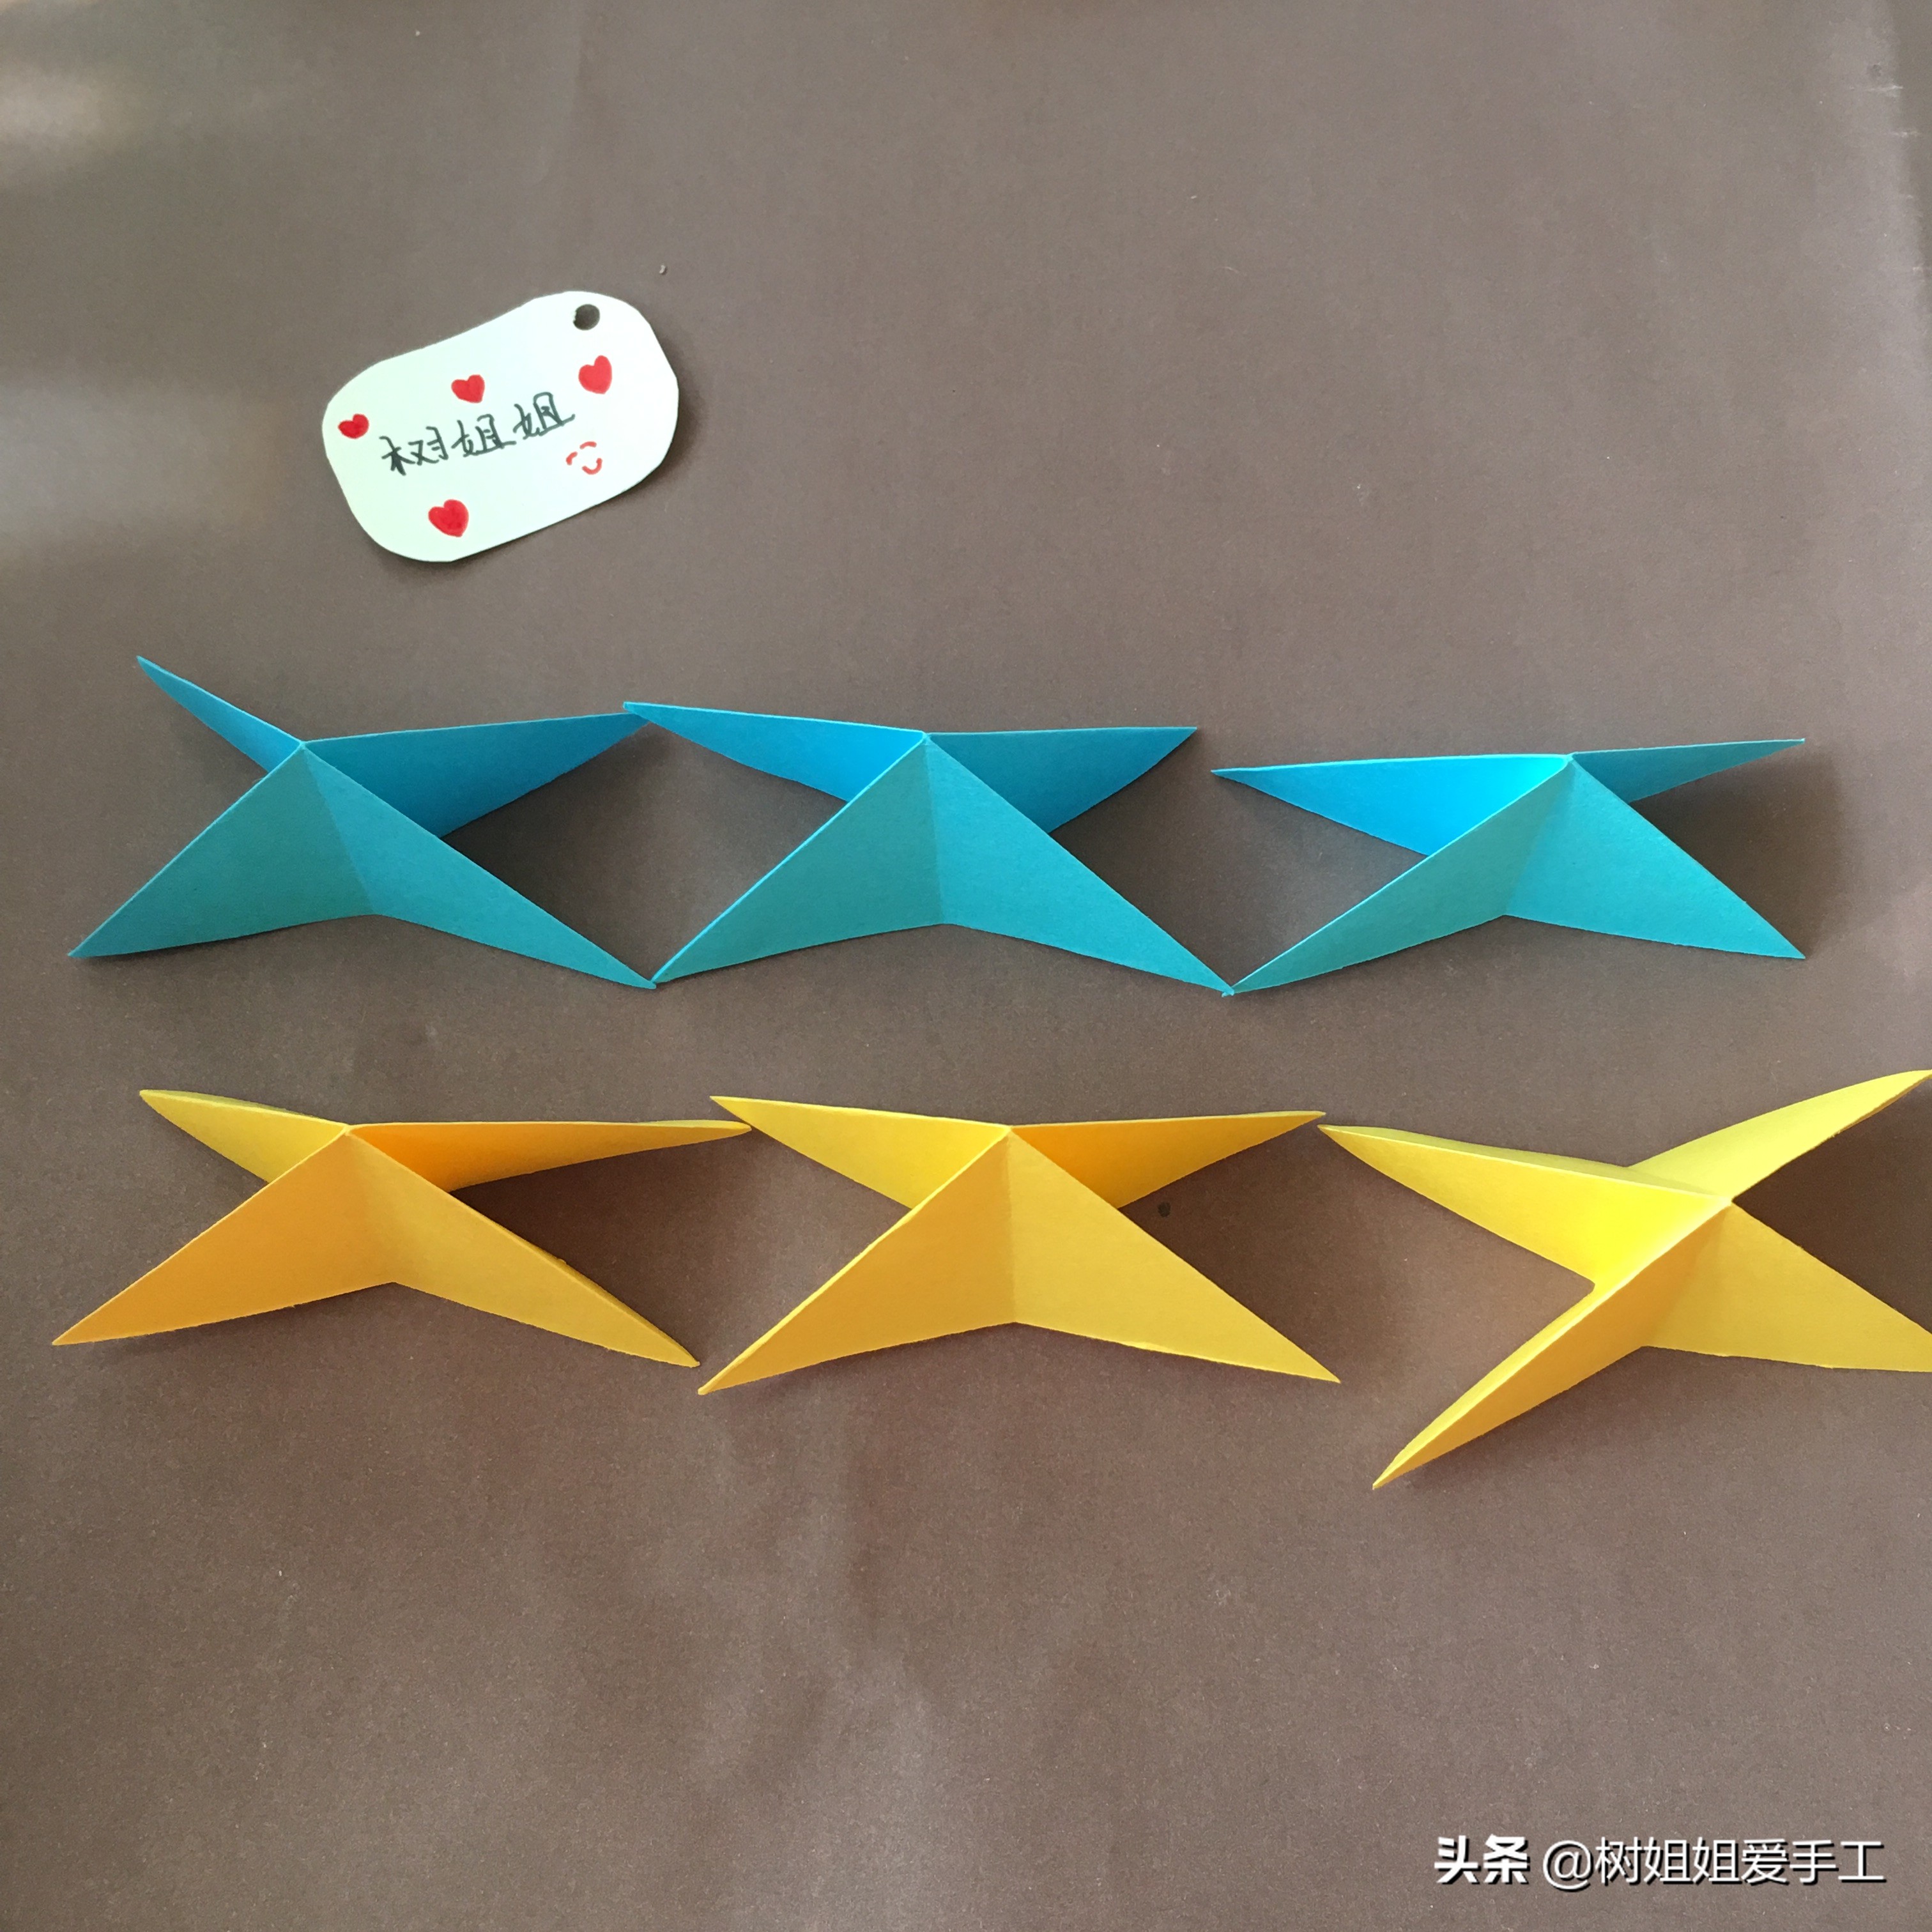 【折纸教程】指尖陀螺 - 哔哩哔哩